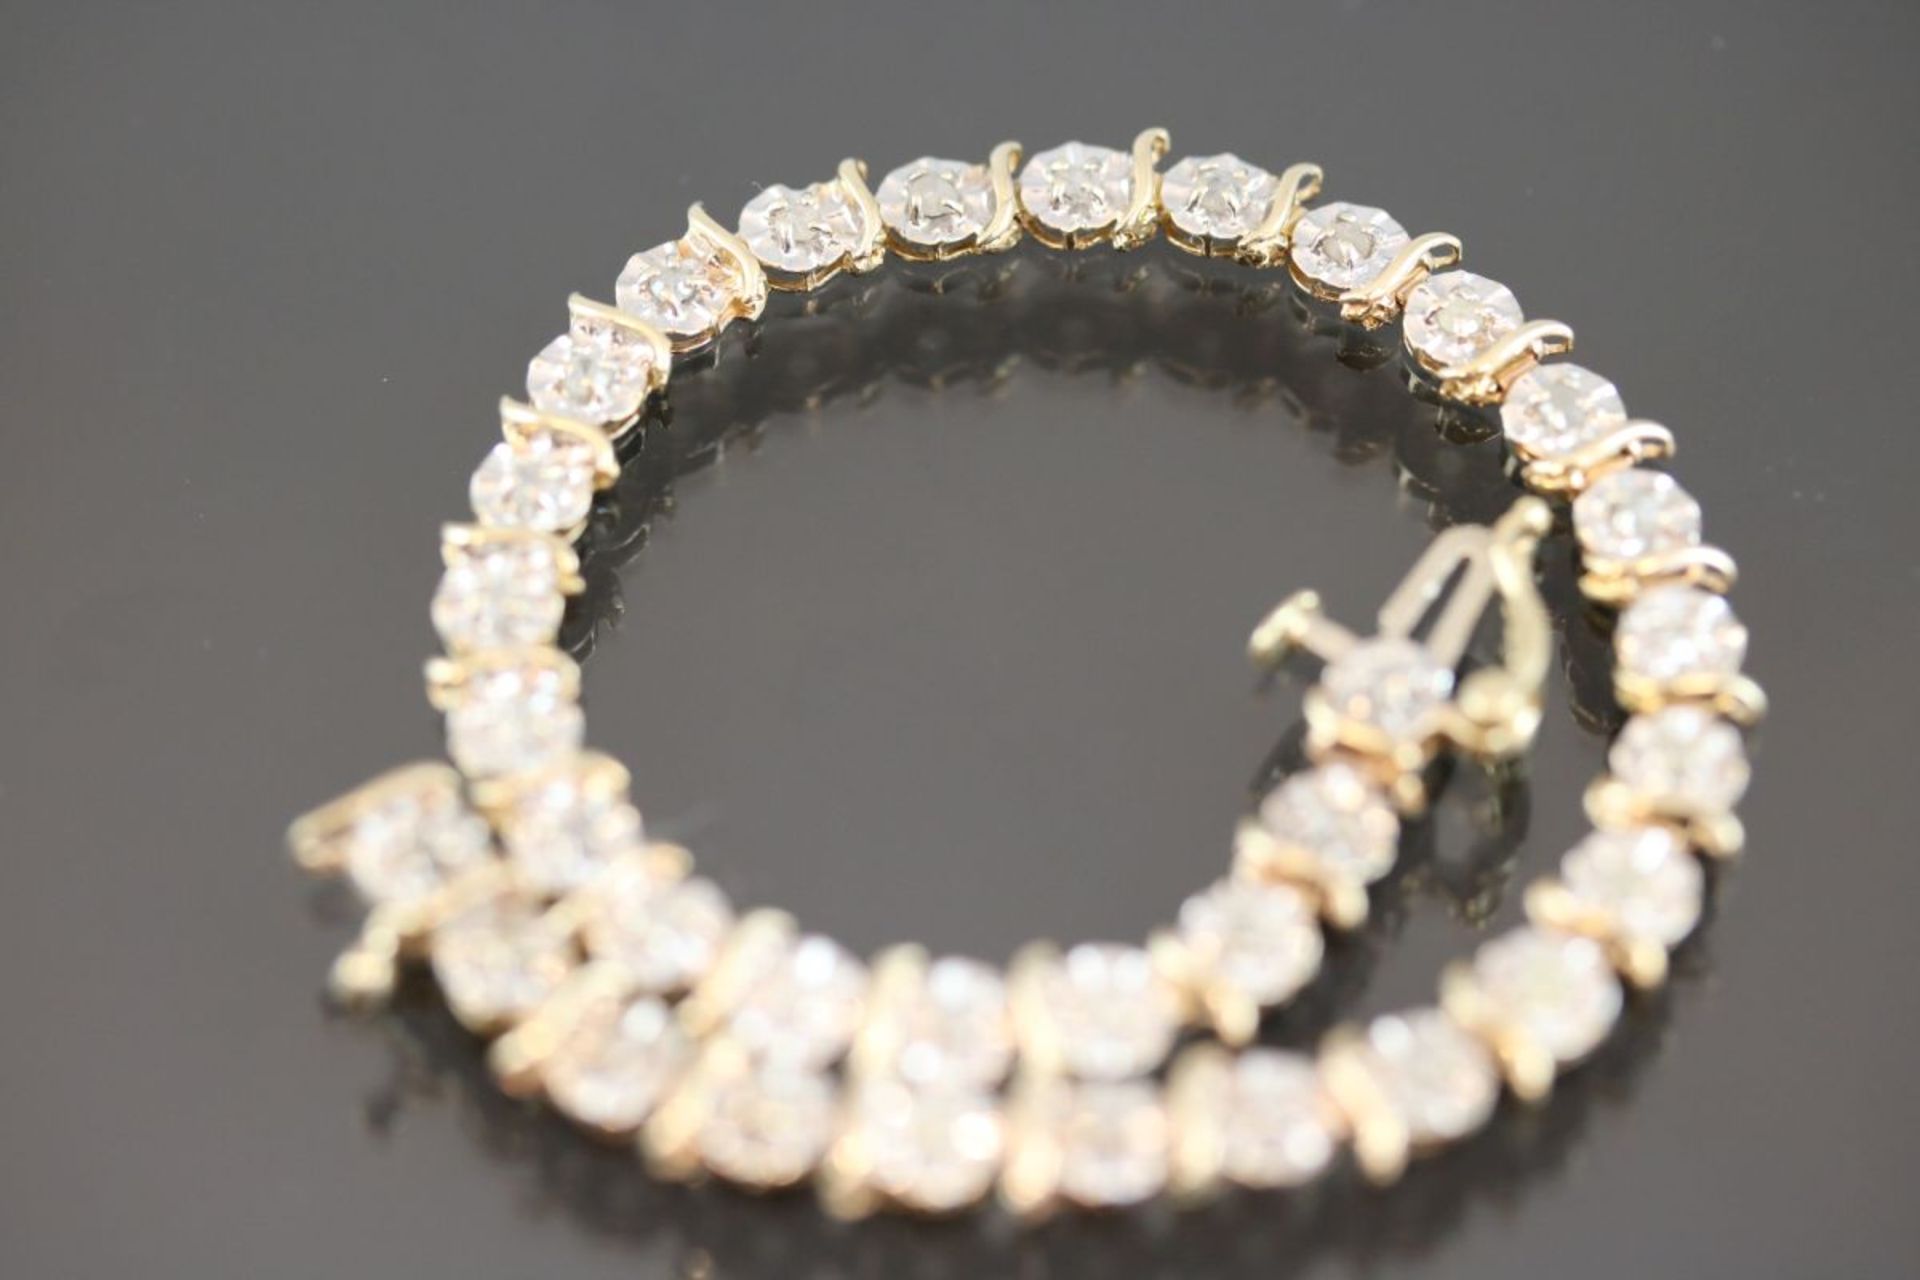 Diamant-Armband, 375 Gelbgold4,8 Gramm 33 Diamanten, ca. 0,60 ct., Länge: 17,5 cm Schätzpreis: 800,-